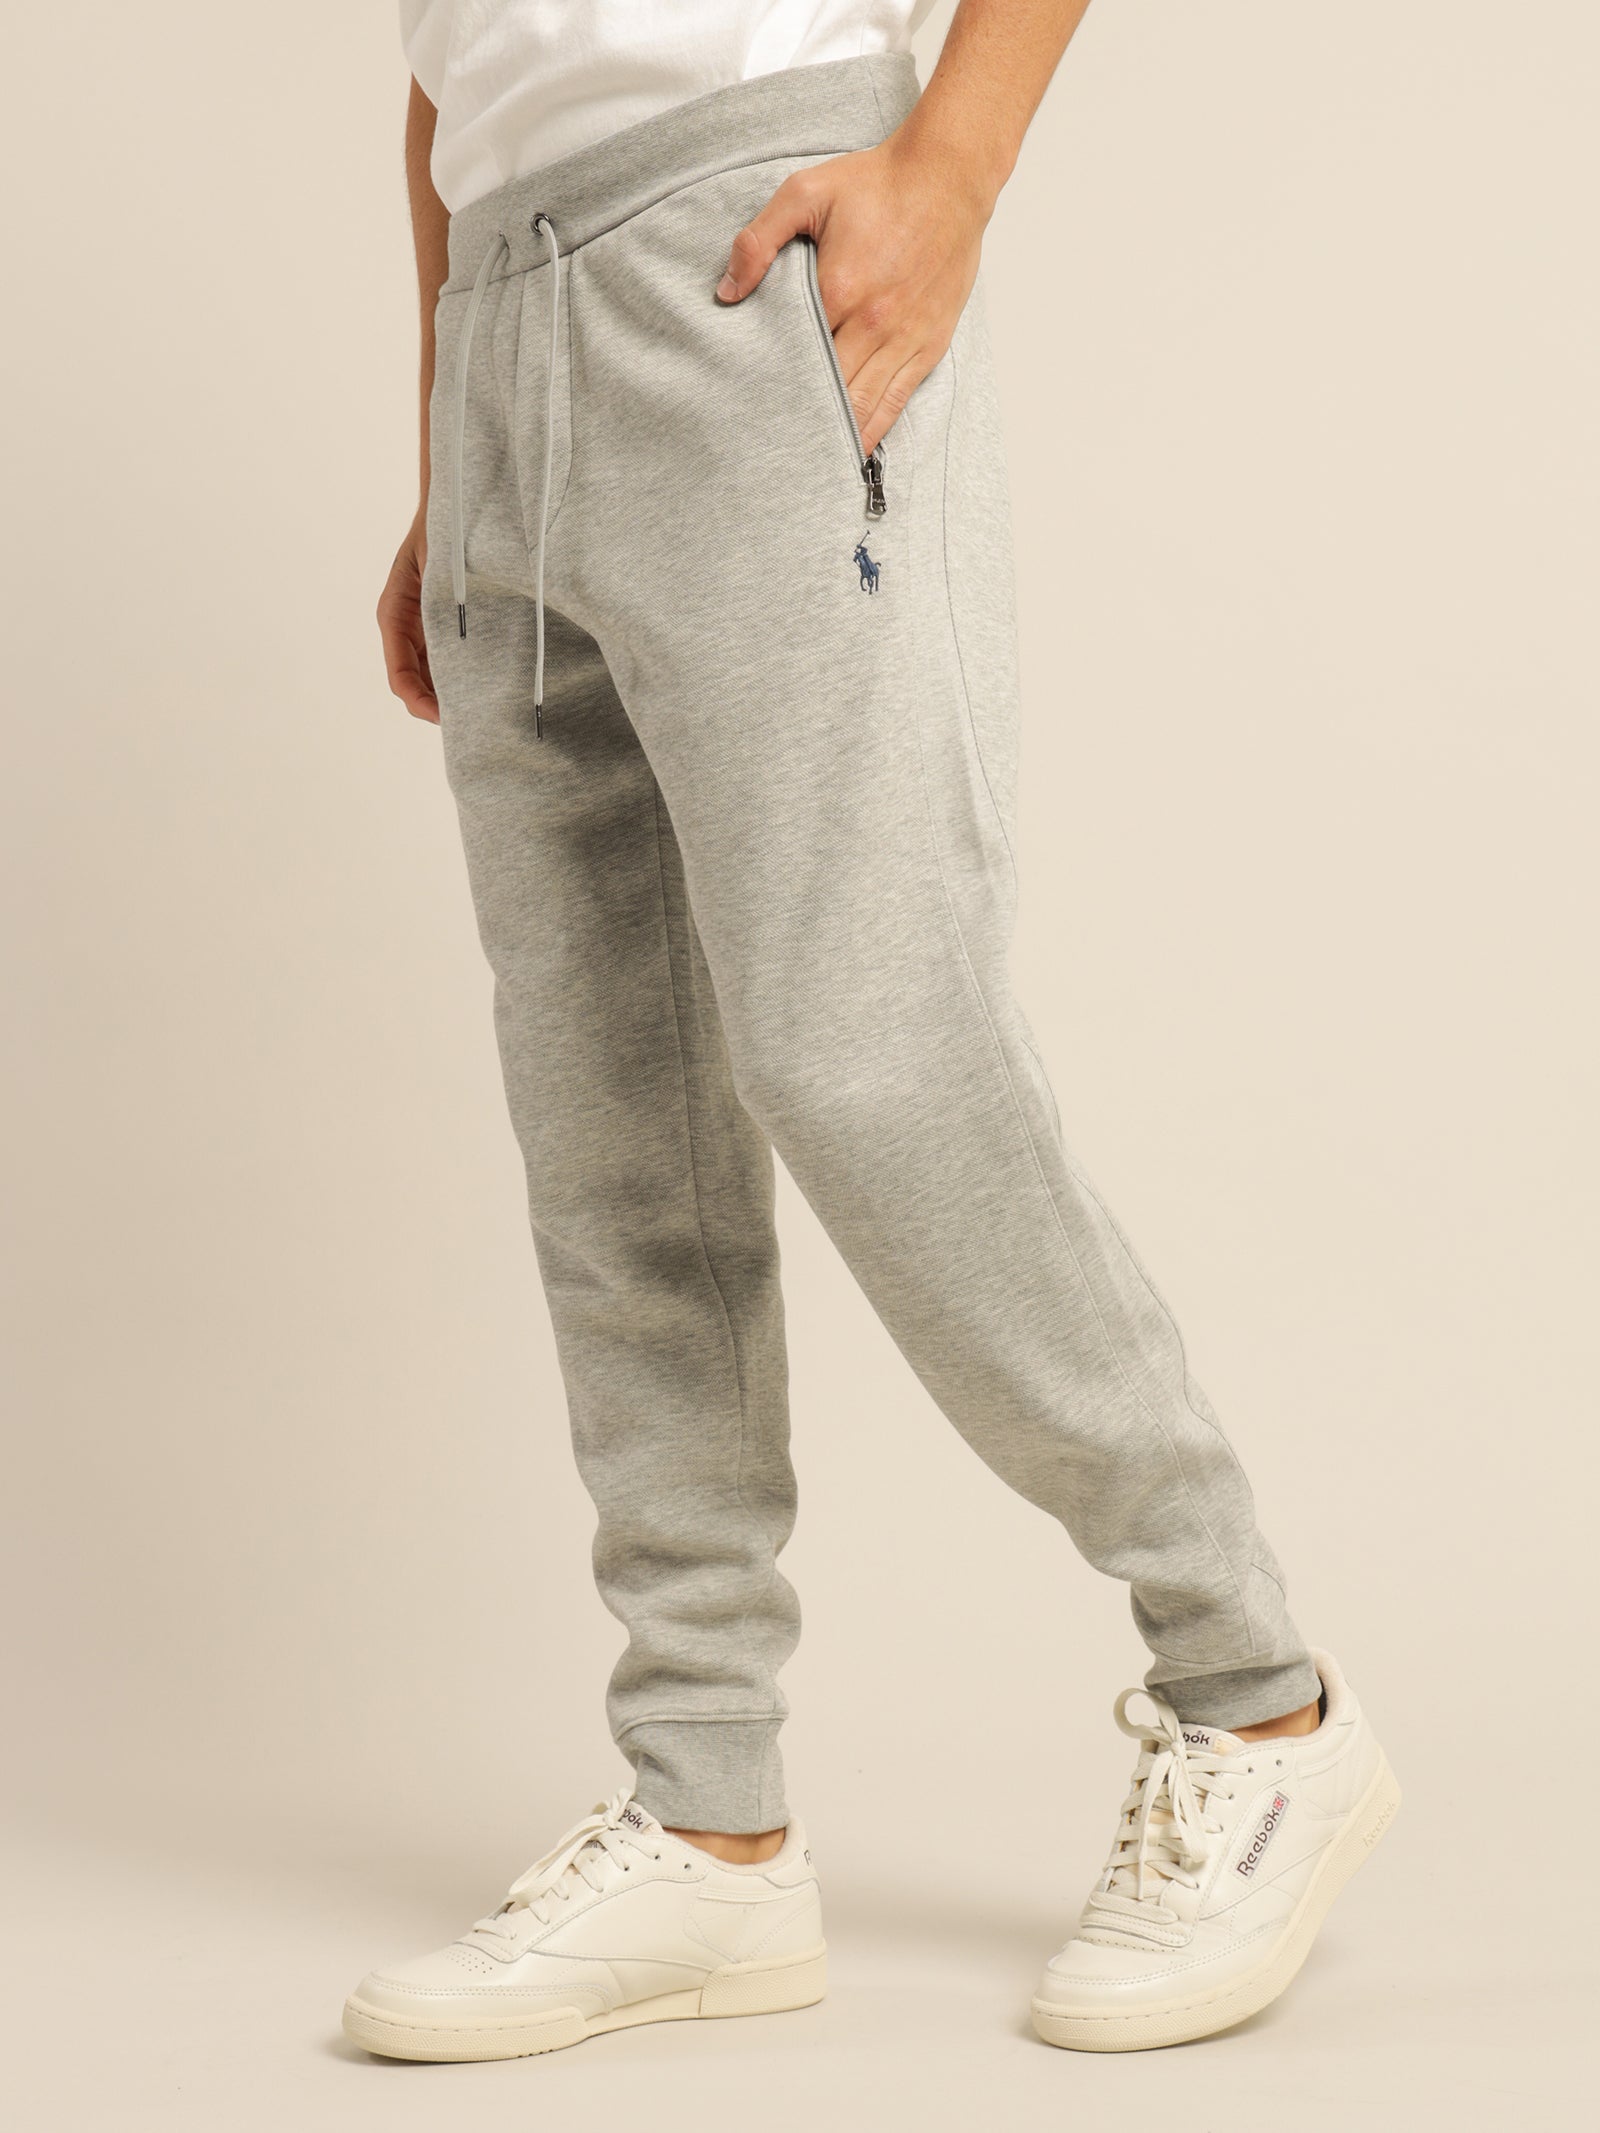 Polo Ralph Lauren sweatpants in gray